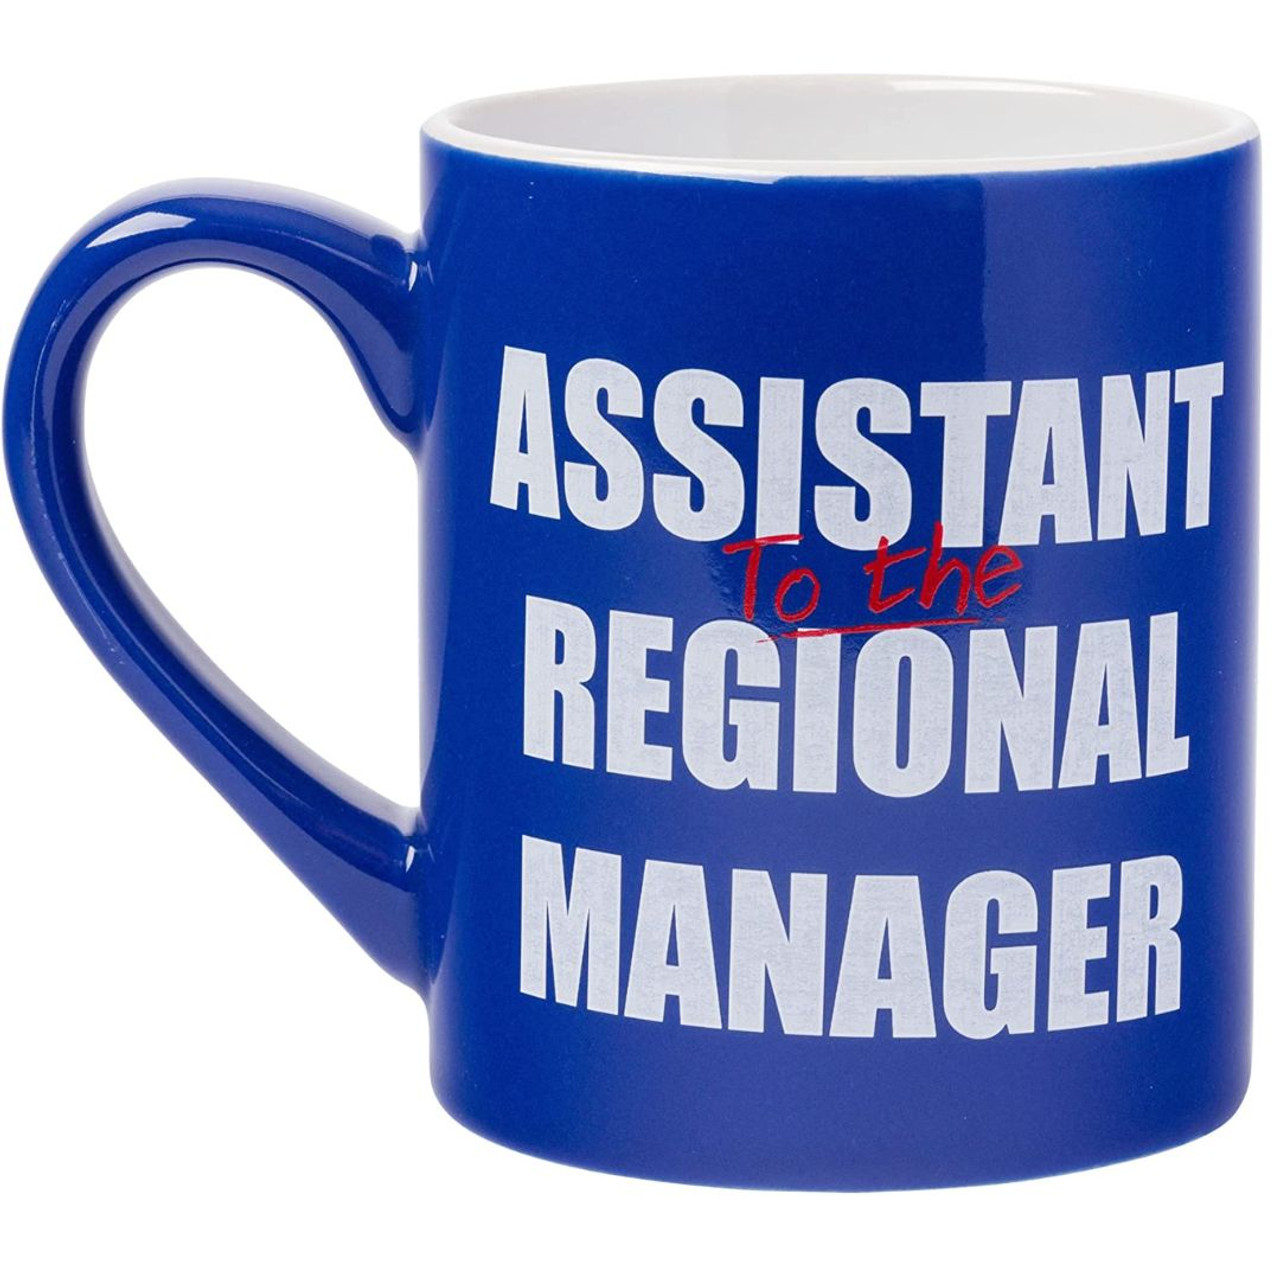 Assistant Manager Definition Gift Mug' Mug